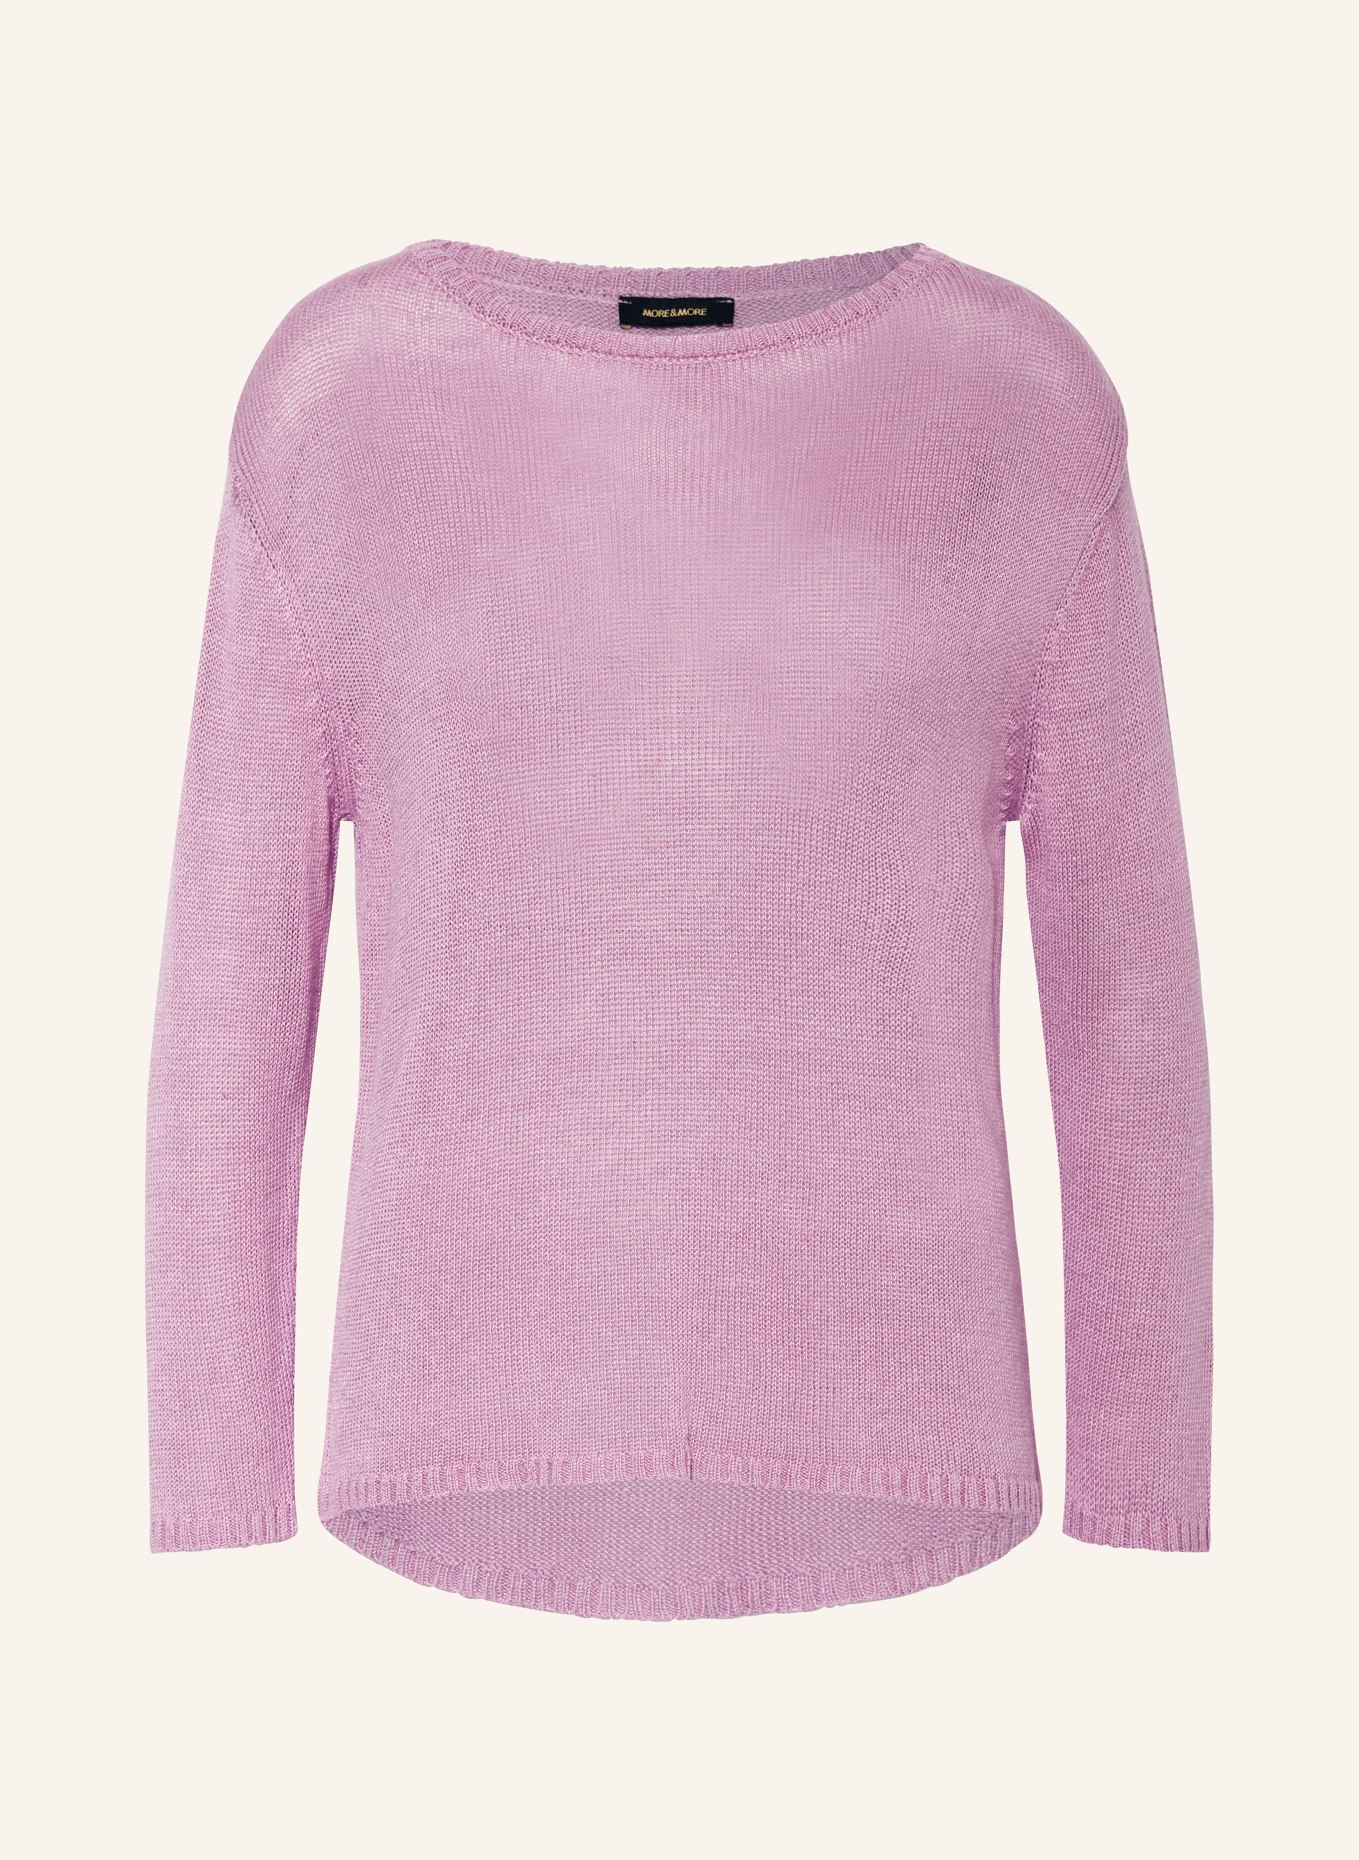 MORE & MORE Pullover, Farbe: HELLLILA (Bild 1)